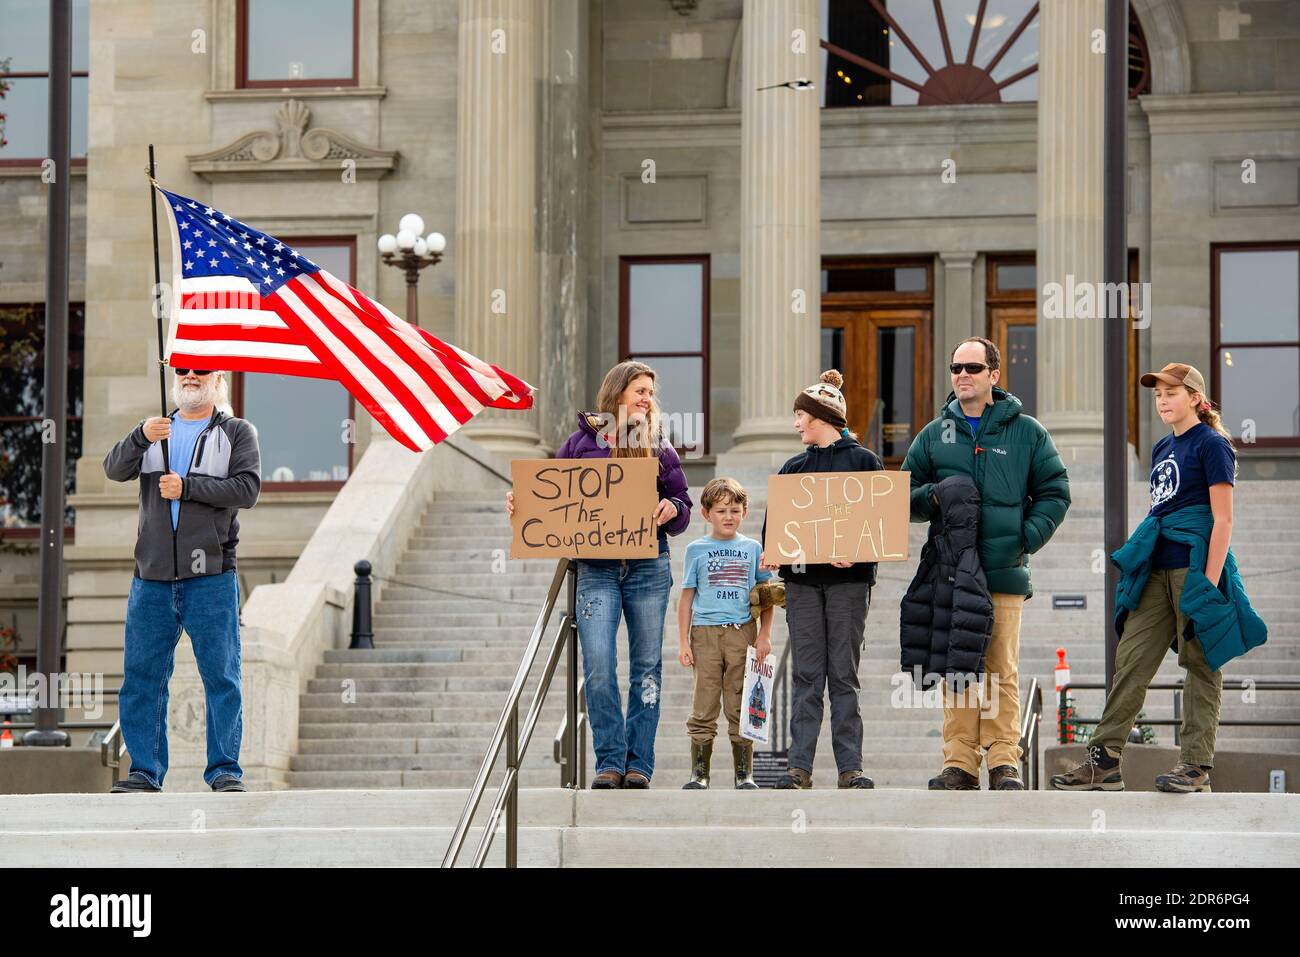 Helena, Montana - 7 de noviembre de 2020: Protestas familiares en el mitin Stop the Steal, perciba que la elección fue robada a Donald Trump por Joe Biden, con el signo Stop Foto de stock